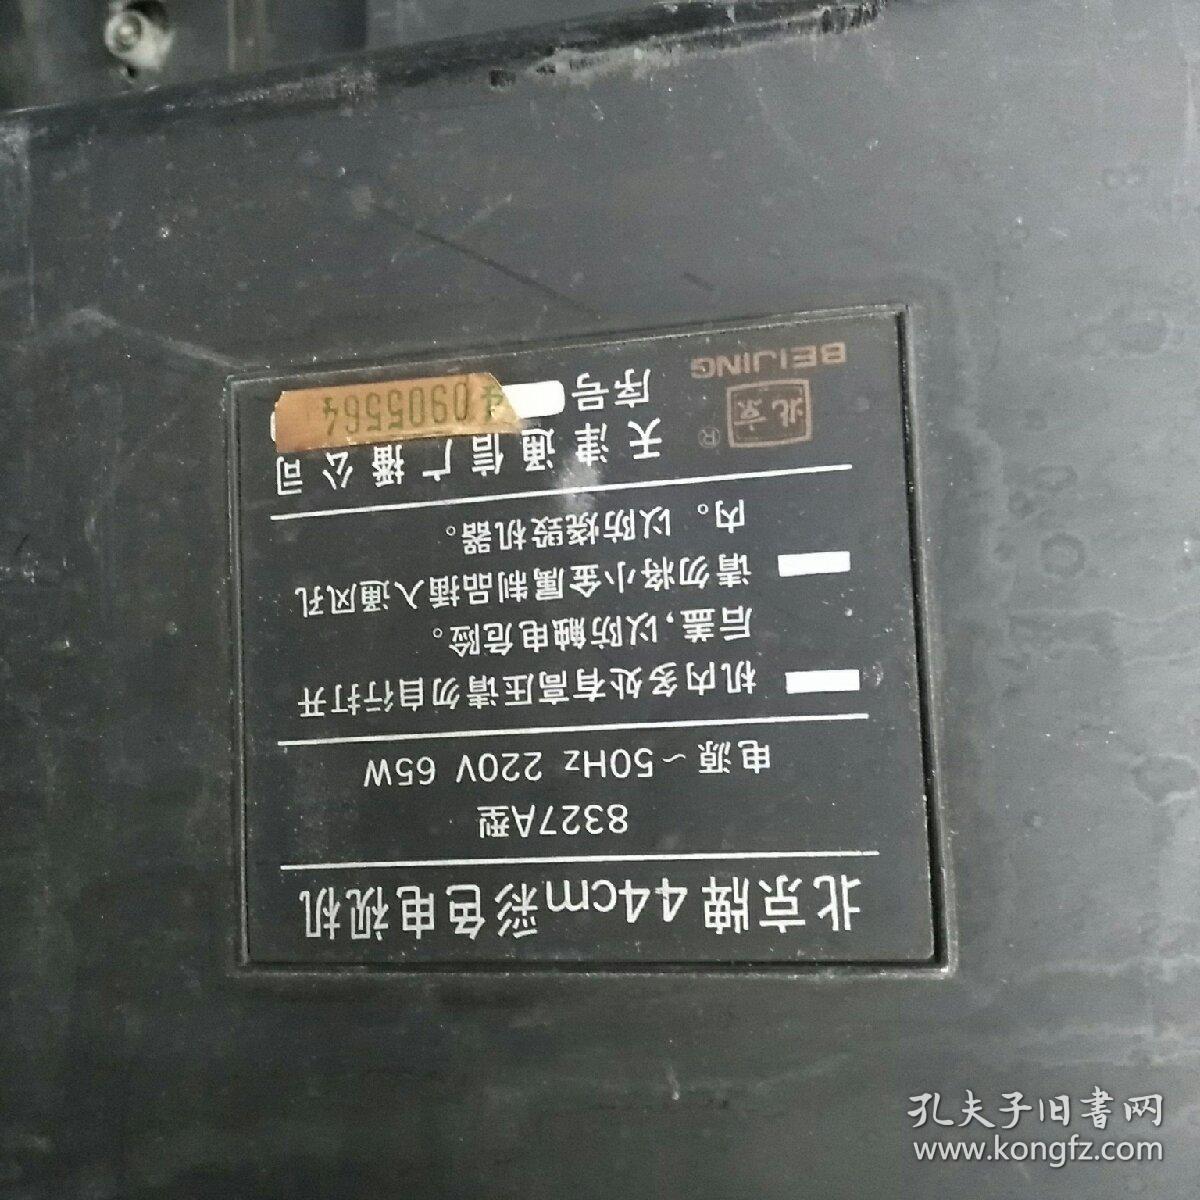 北京牌44cm彩色电视机